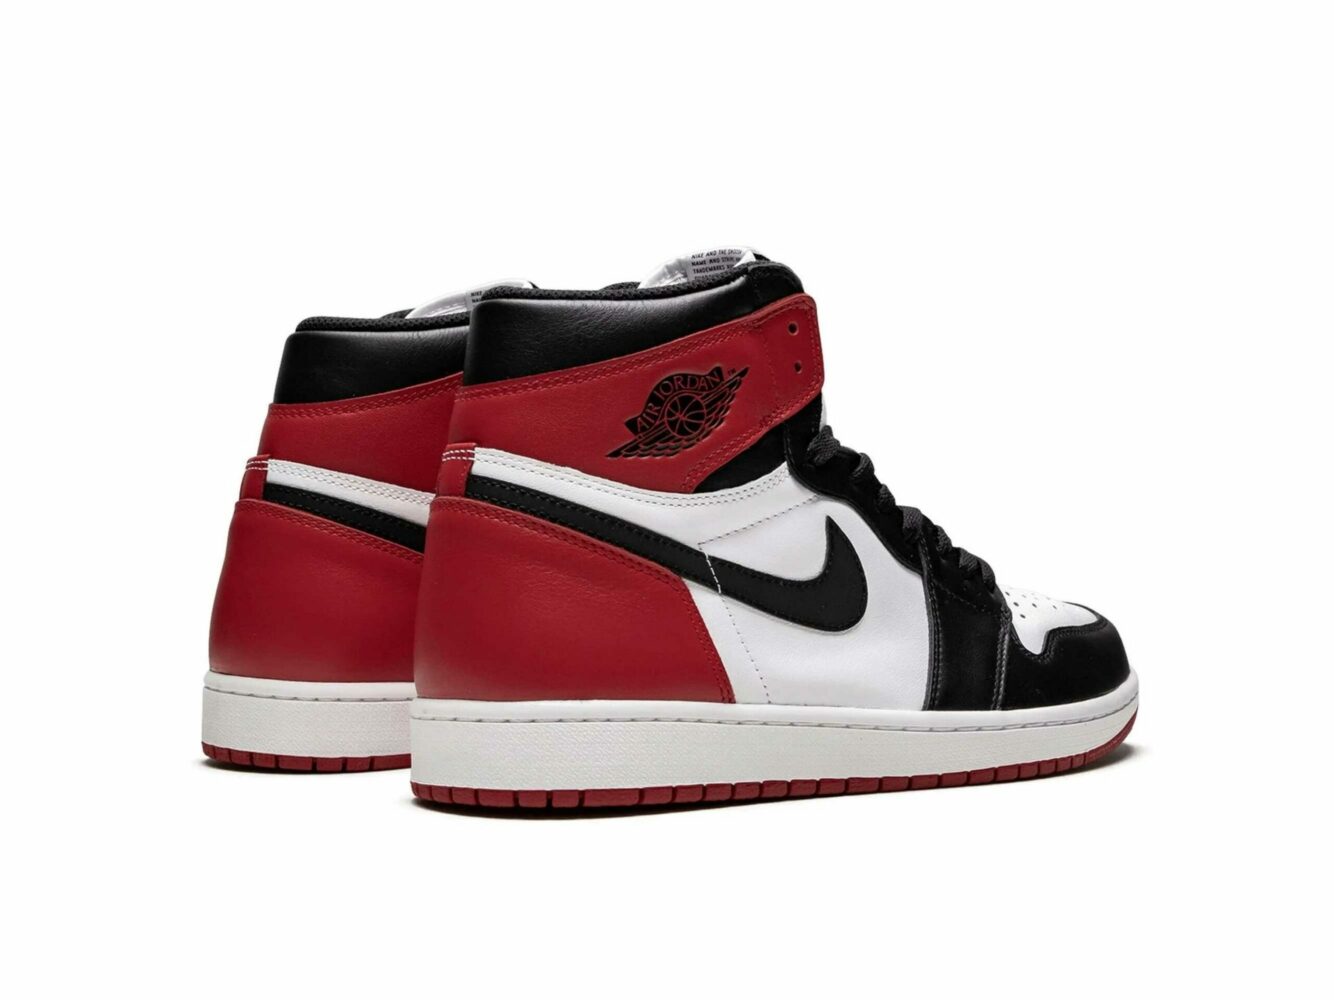 Jordan 1 retro high og black toe 555088_125 купить